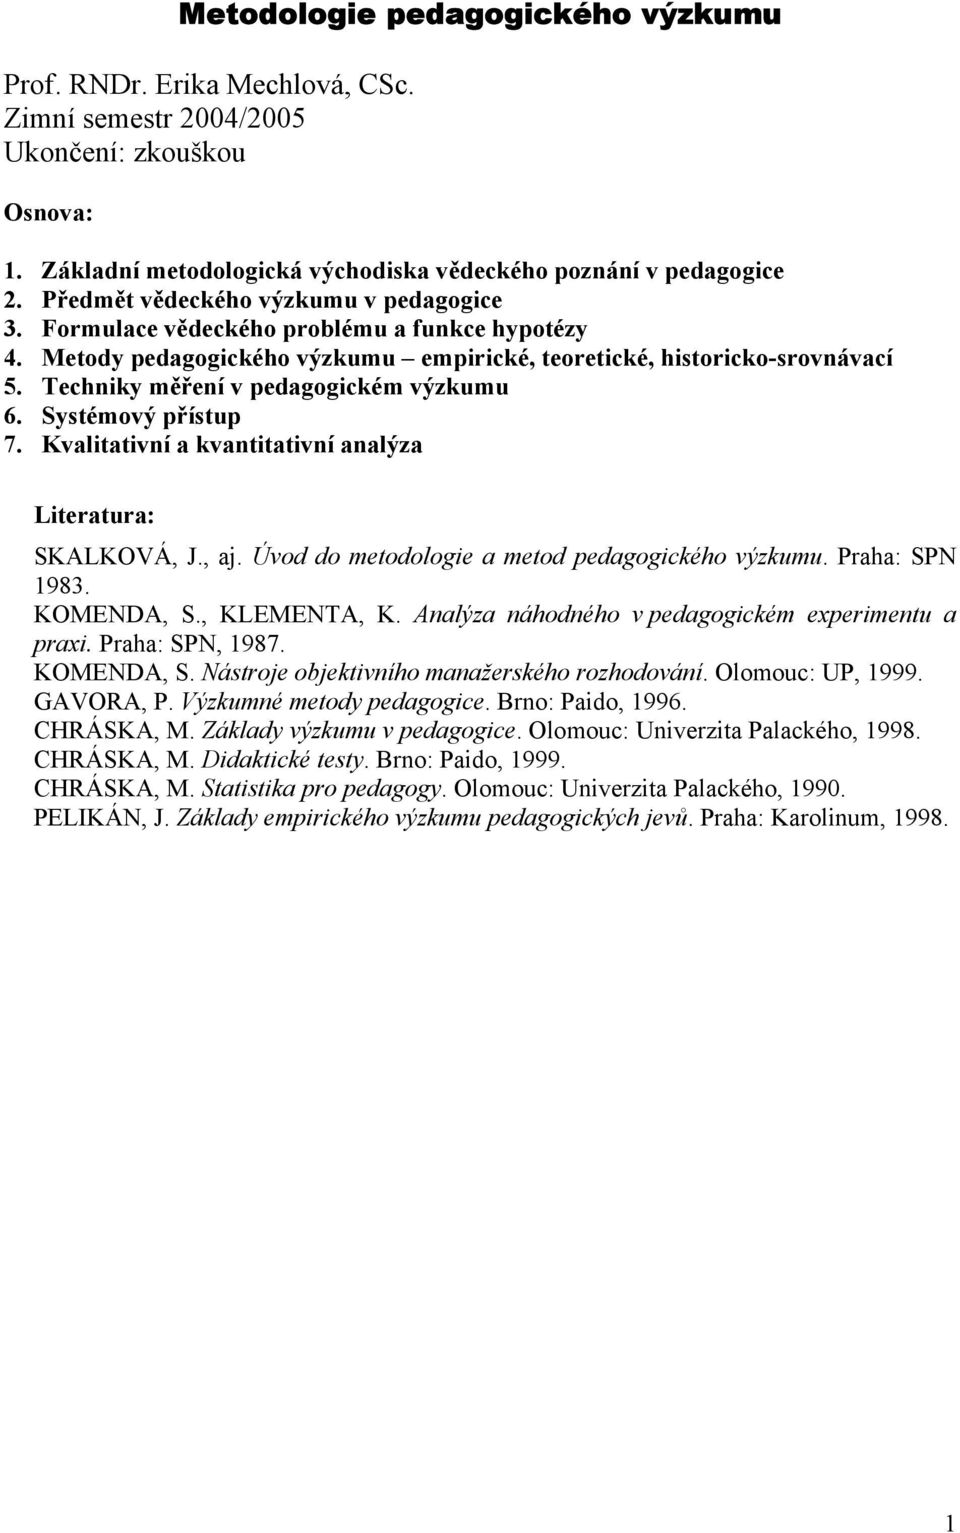 Metodologie pedagogického výzkumu - PDF Stažení zdarma